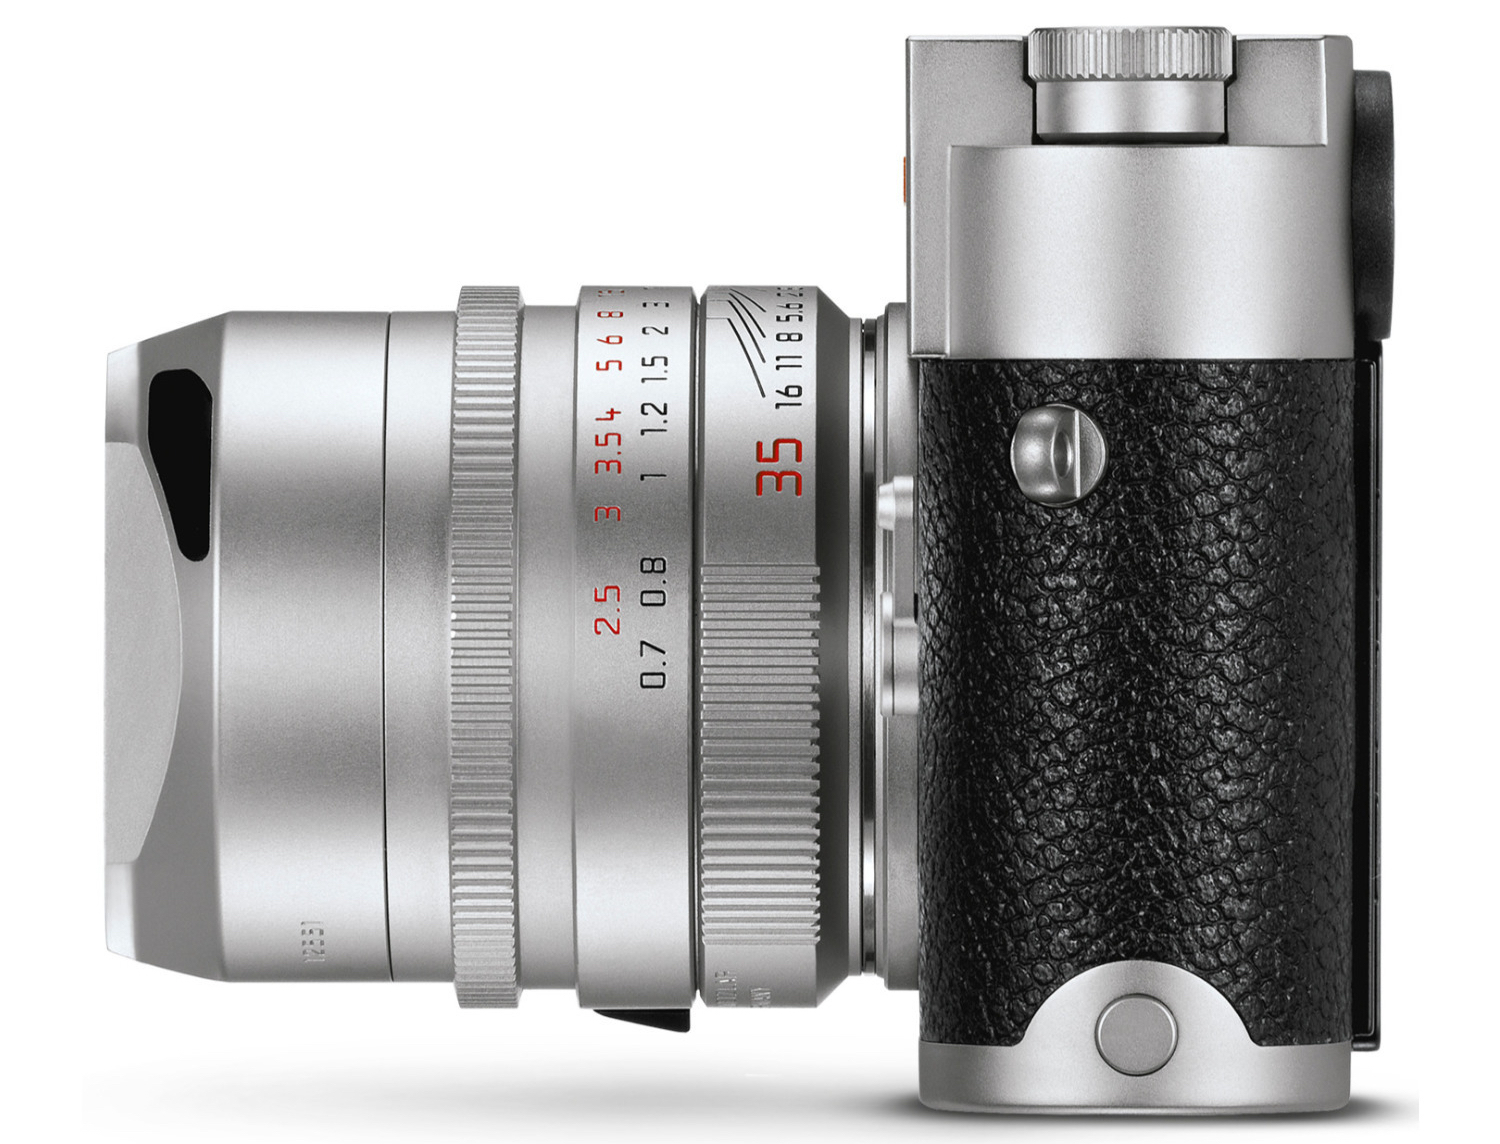 Leica chính thức ra mắt M10-R với cảm biến độ phân giải 40MP